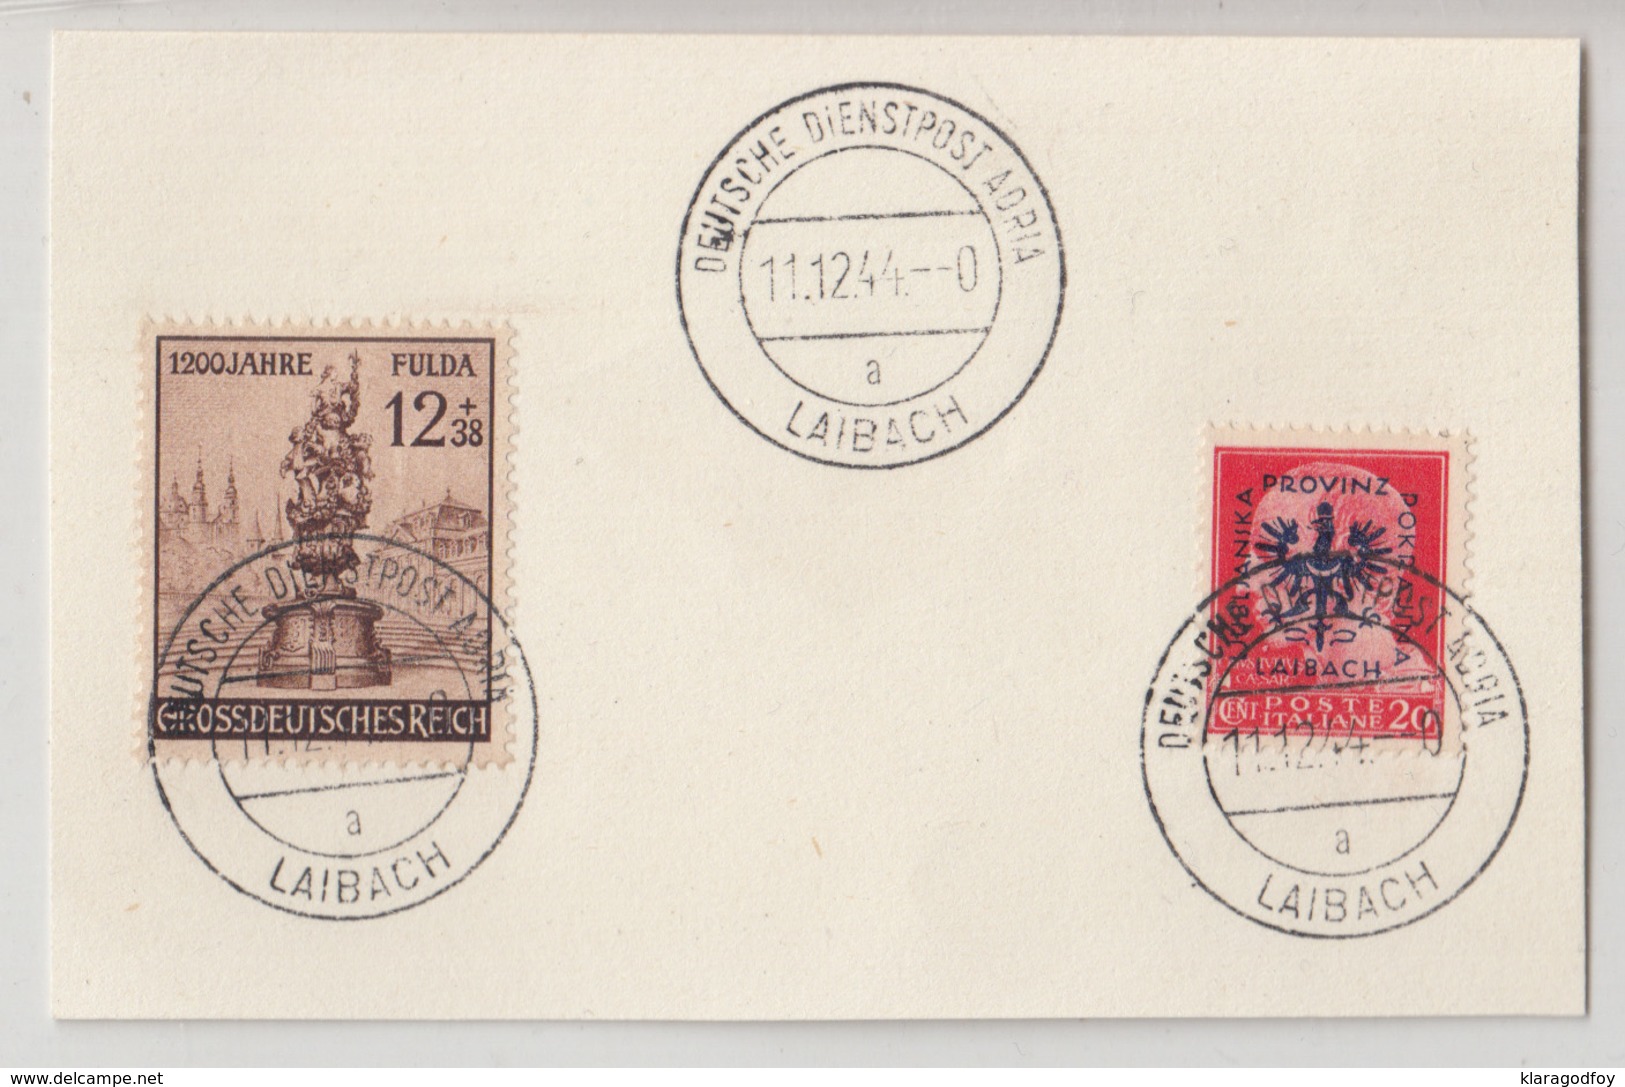 Deutsche Dienstpost Adria Laibach 1944 Postmark On Card B190220 - Slovenia